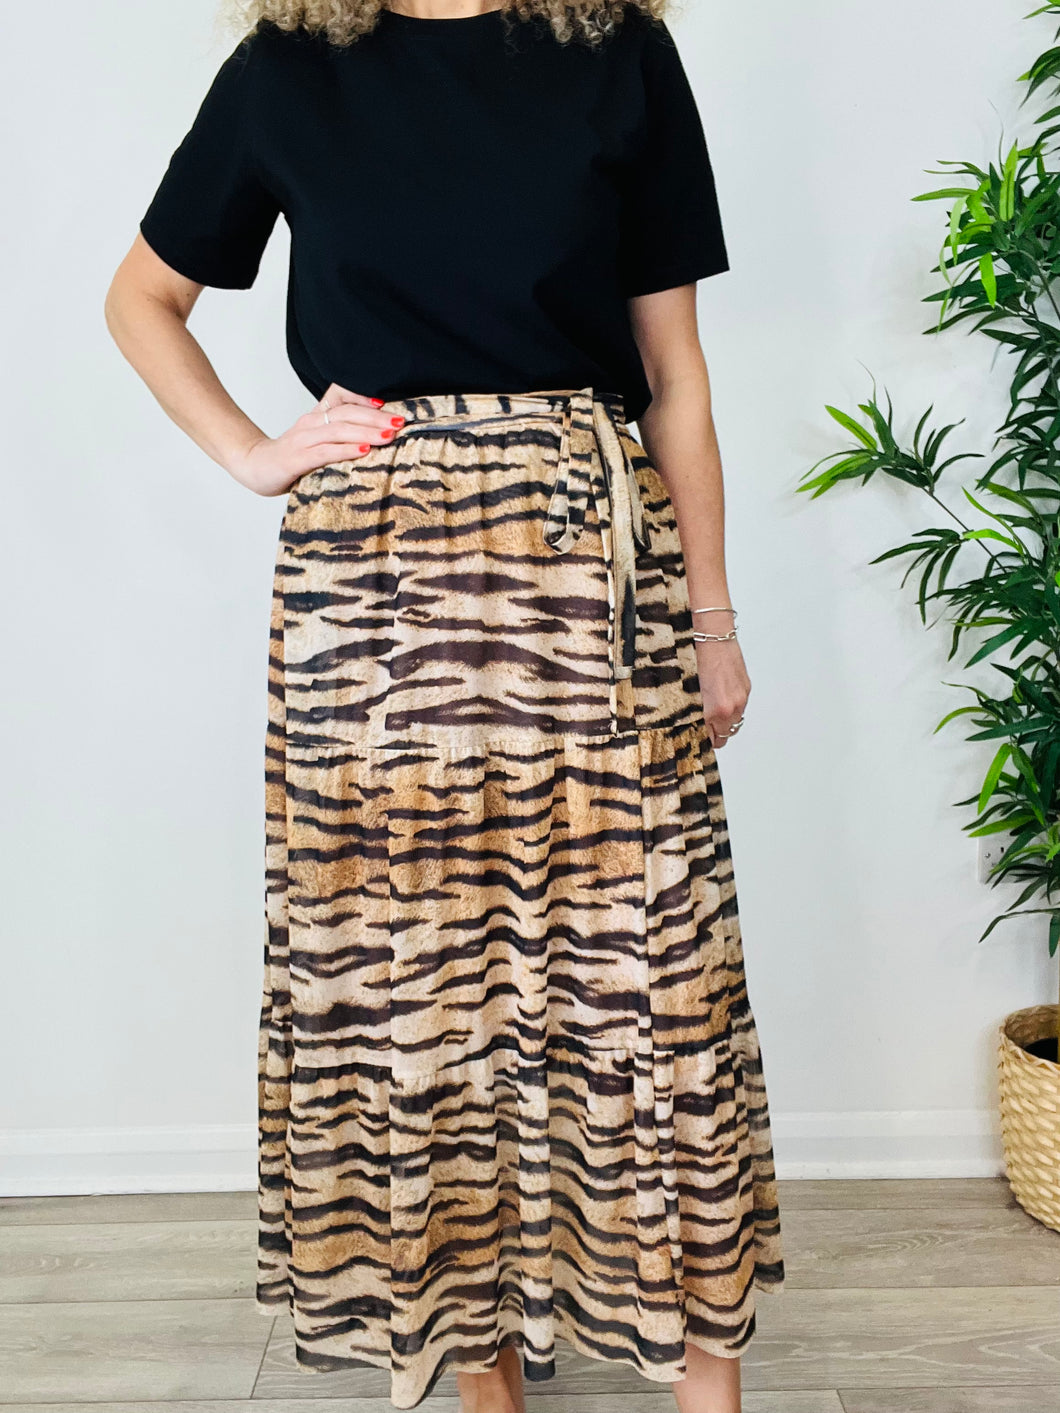 Tiger Print Wrap Skirt - Size M